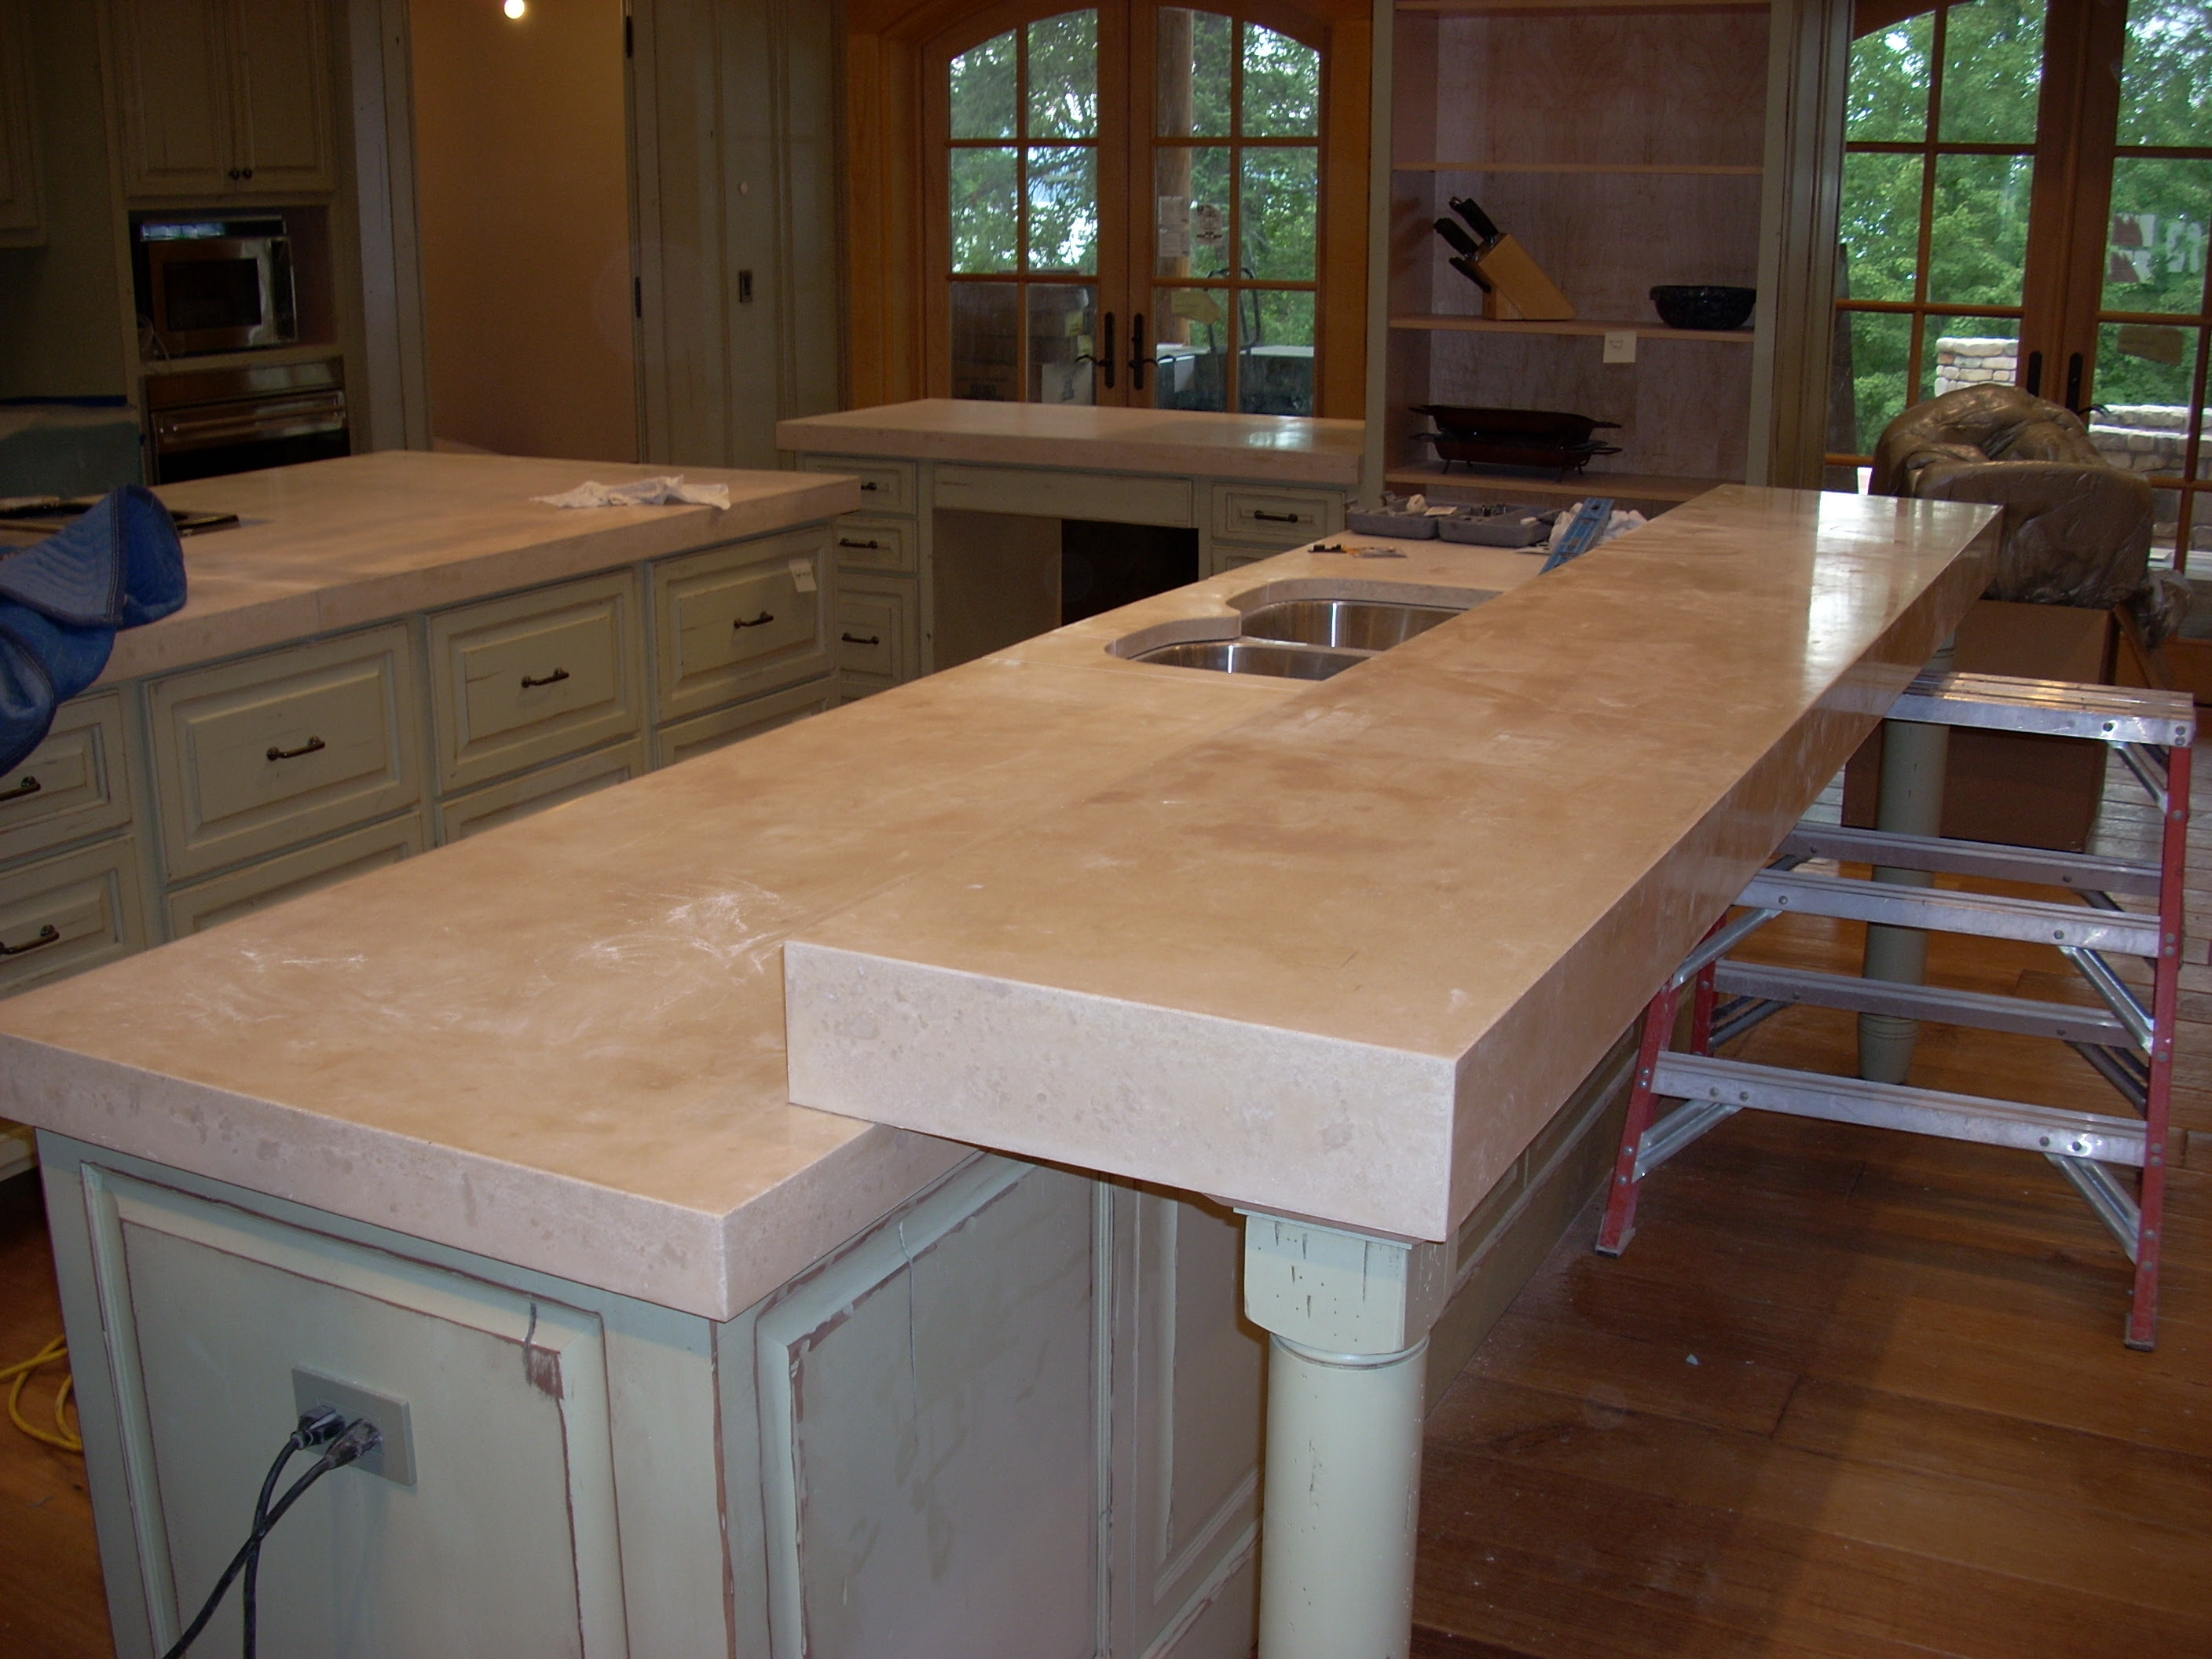 Concrete Kitchen Countertops Modern Home Design And Decor